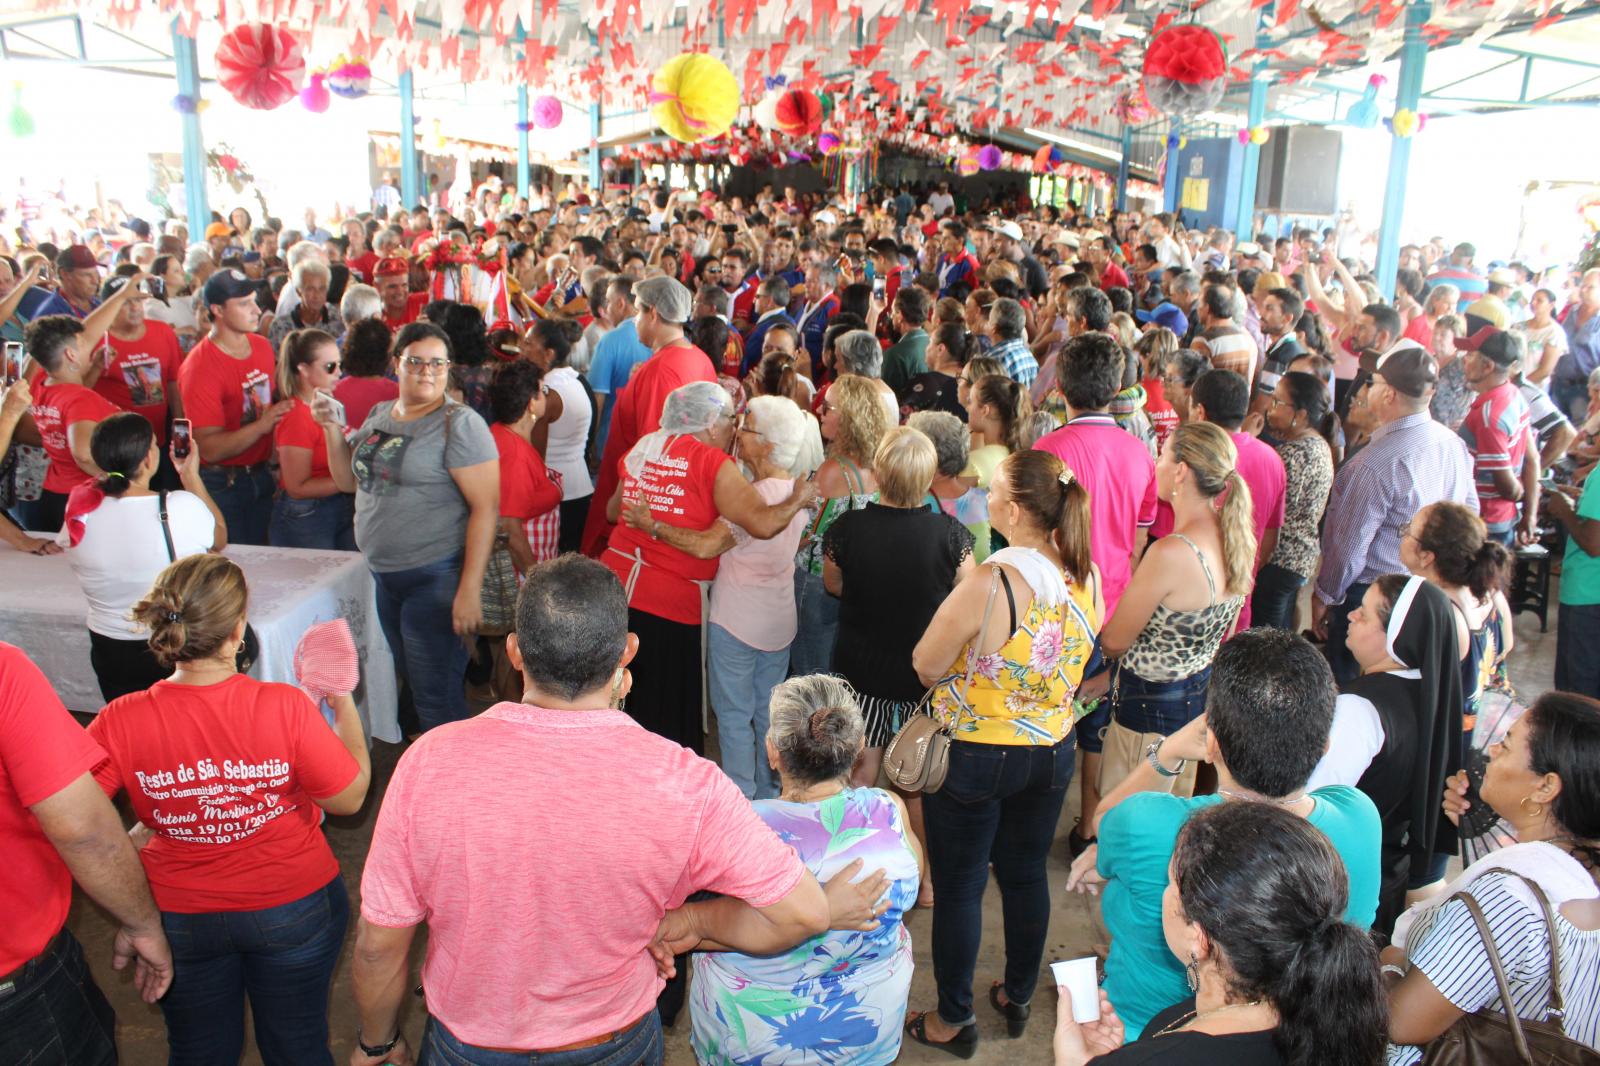 População homenageia São Sebastião em grande festa no Córrego do Ouro